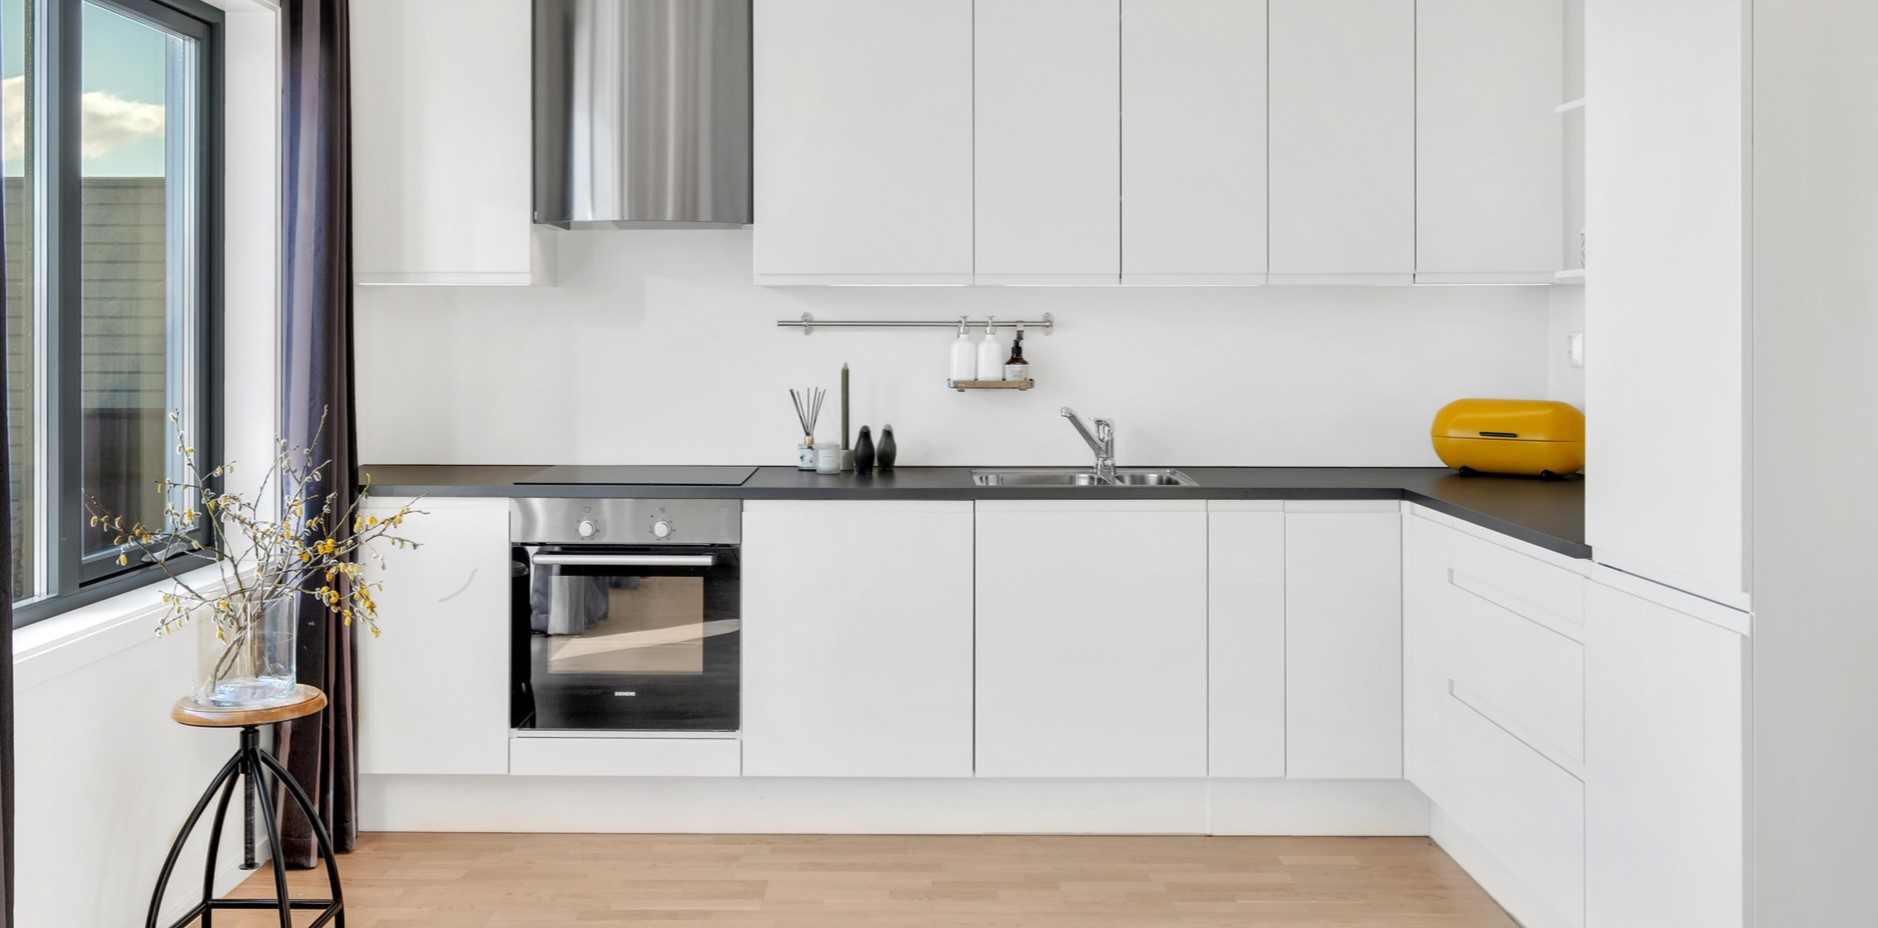 Черная столешница в комбинации с кухонным гарнитуром в стиле минимализм